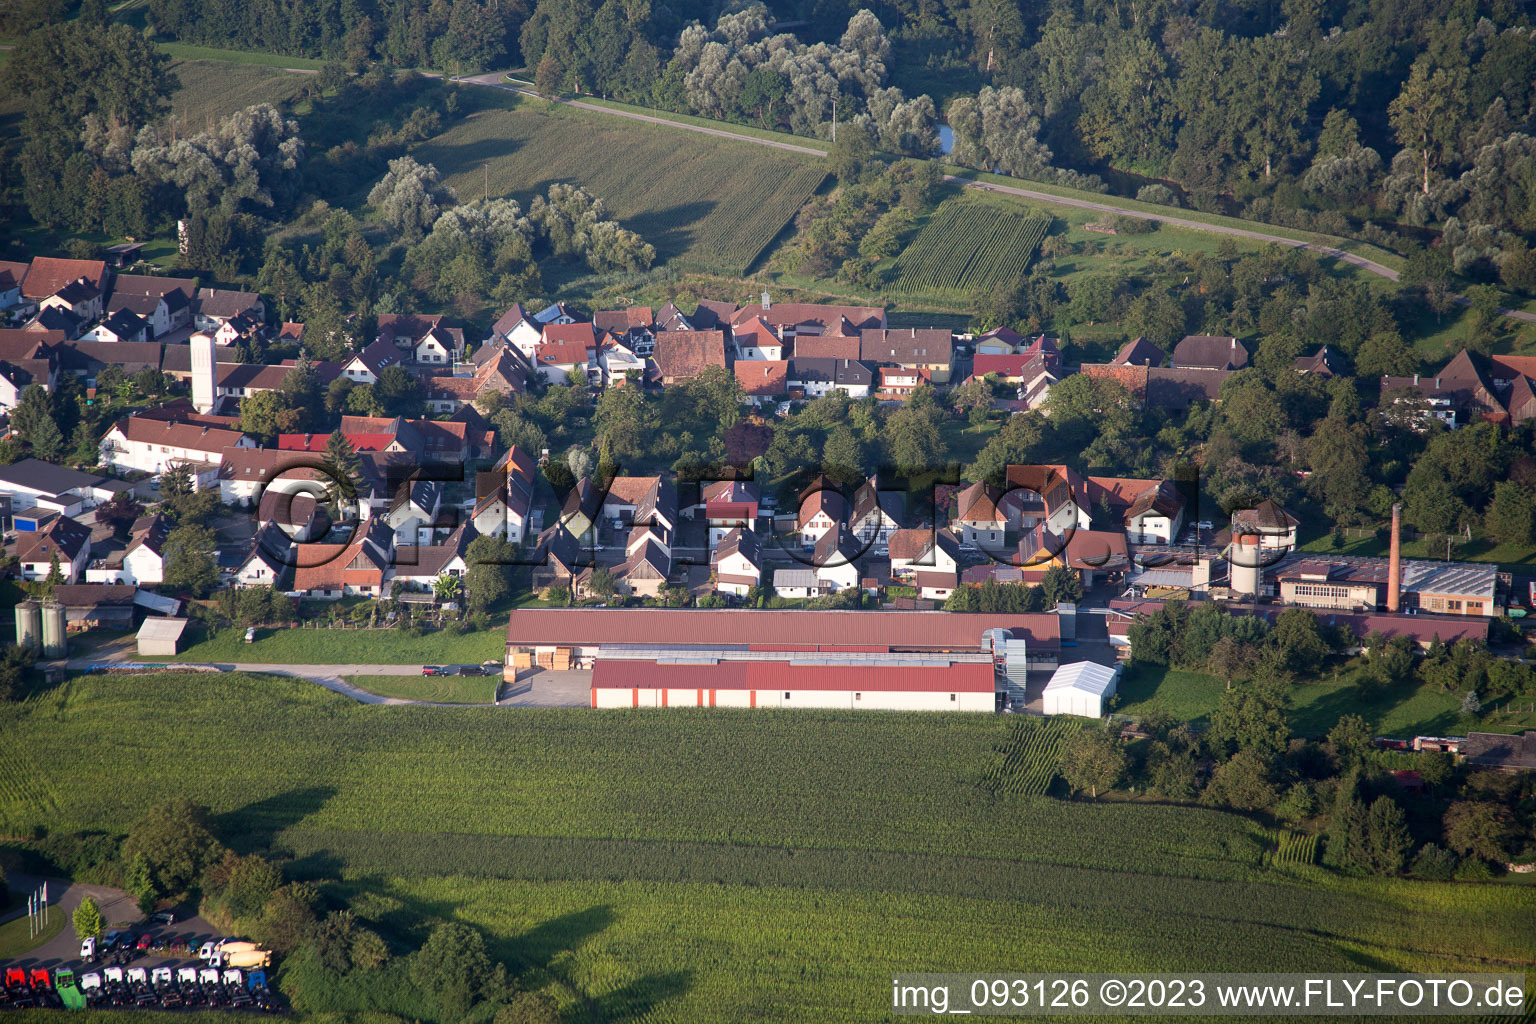 Luftbild von Ortsteil Helmlingen in Rheinau im Bundesland Baden-Württemberg, Deutschland